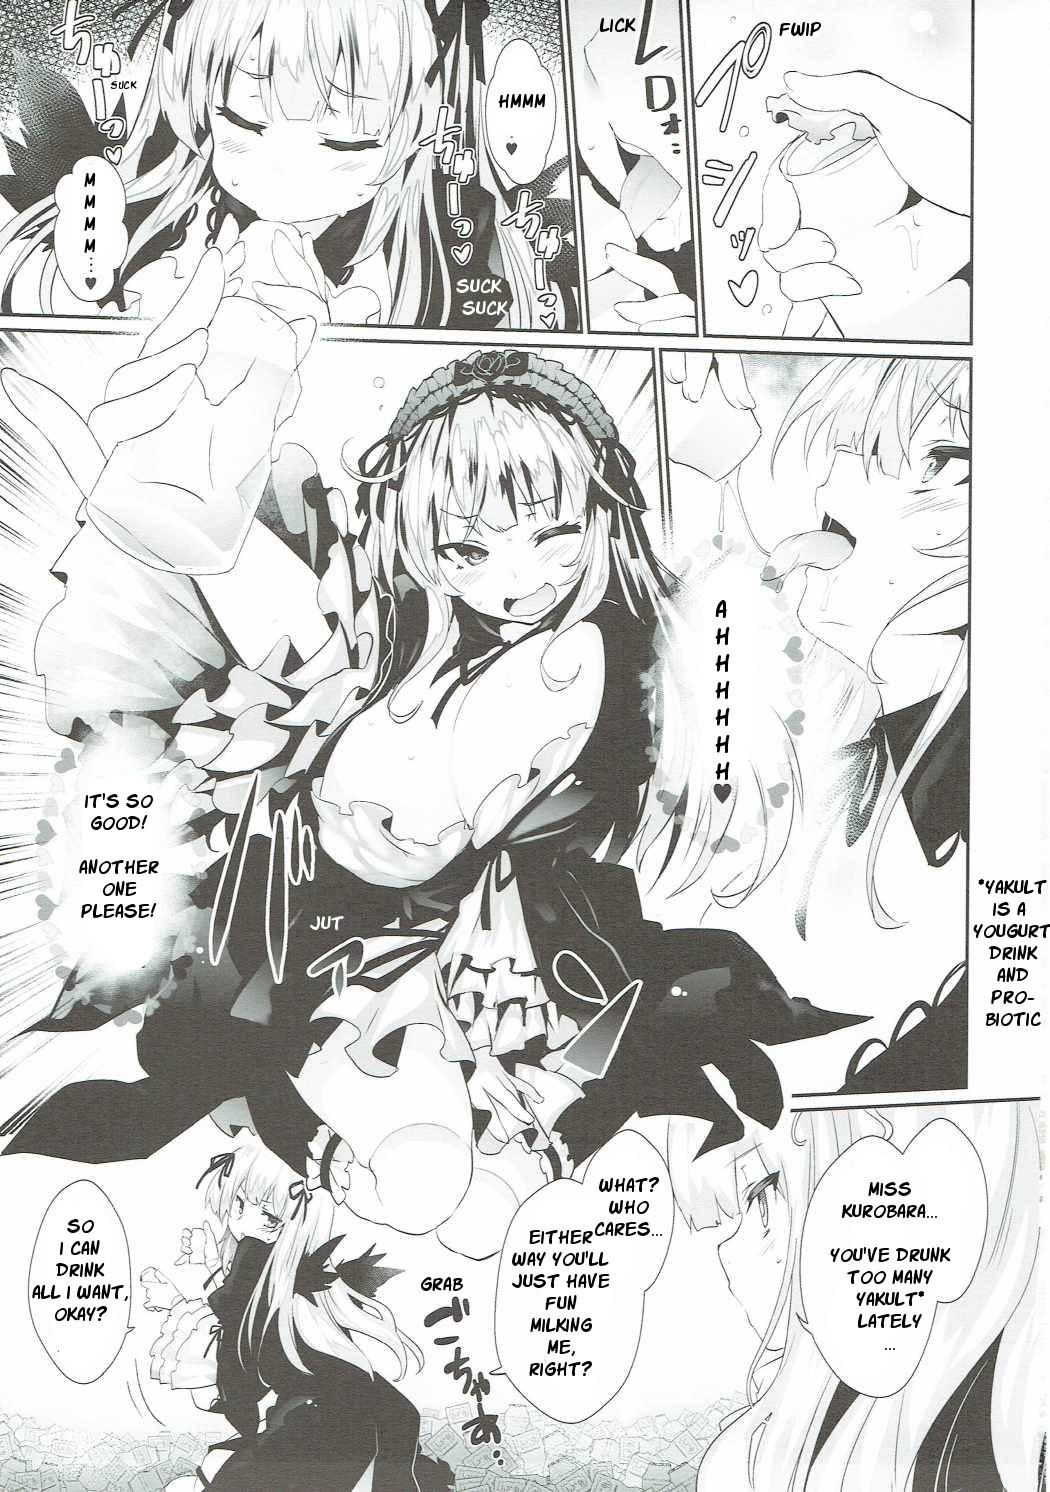 Buttplug Bara Niku! 3 - Rozen maiden Cum Inside - Page 2